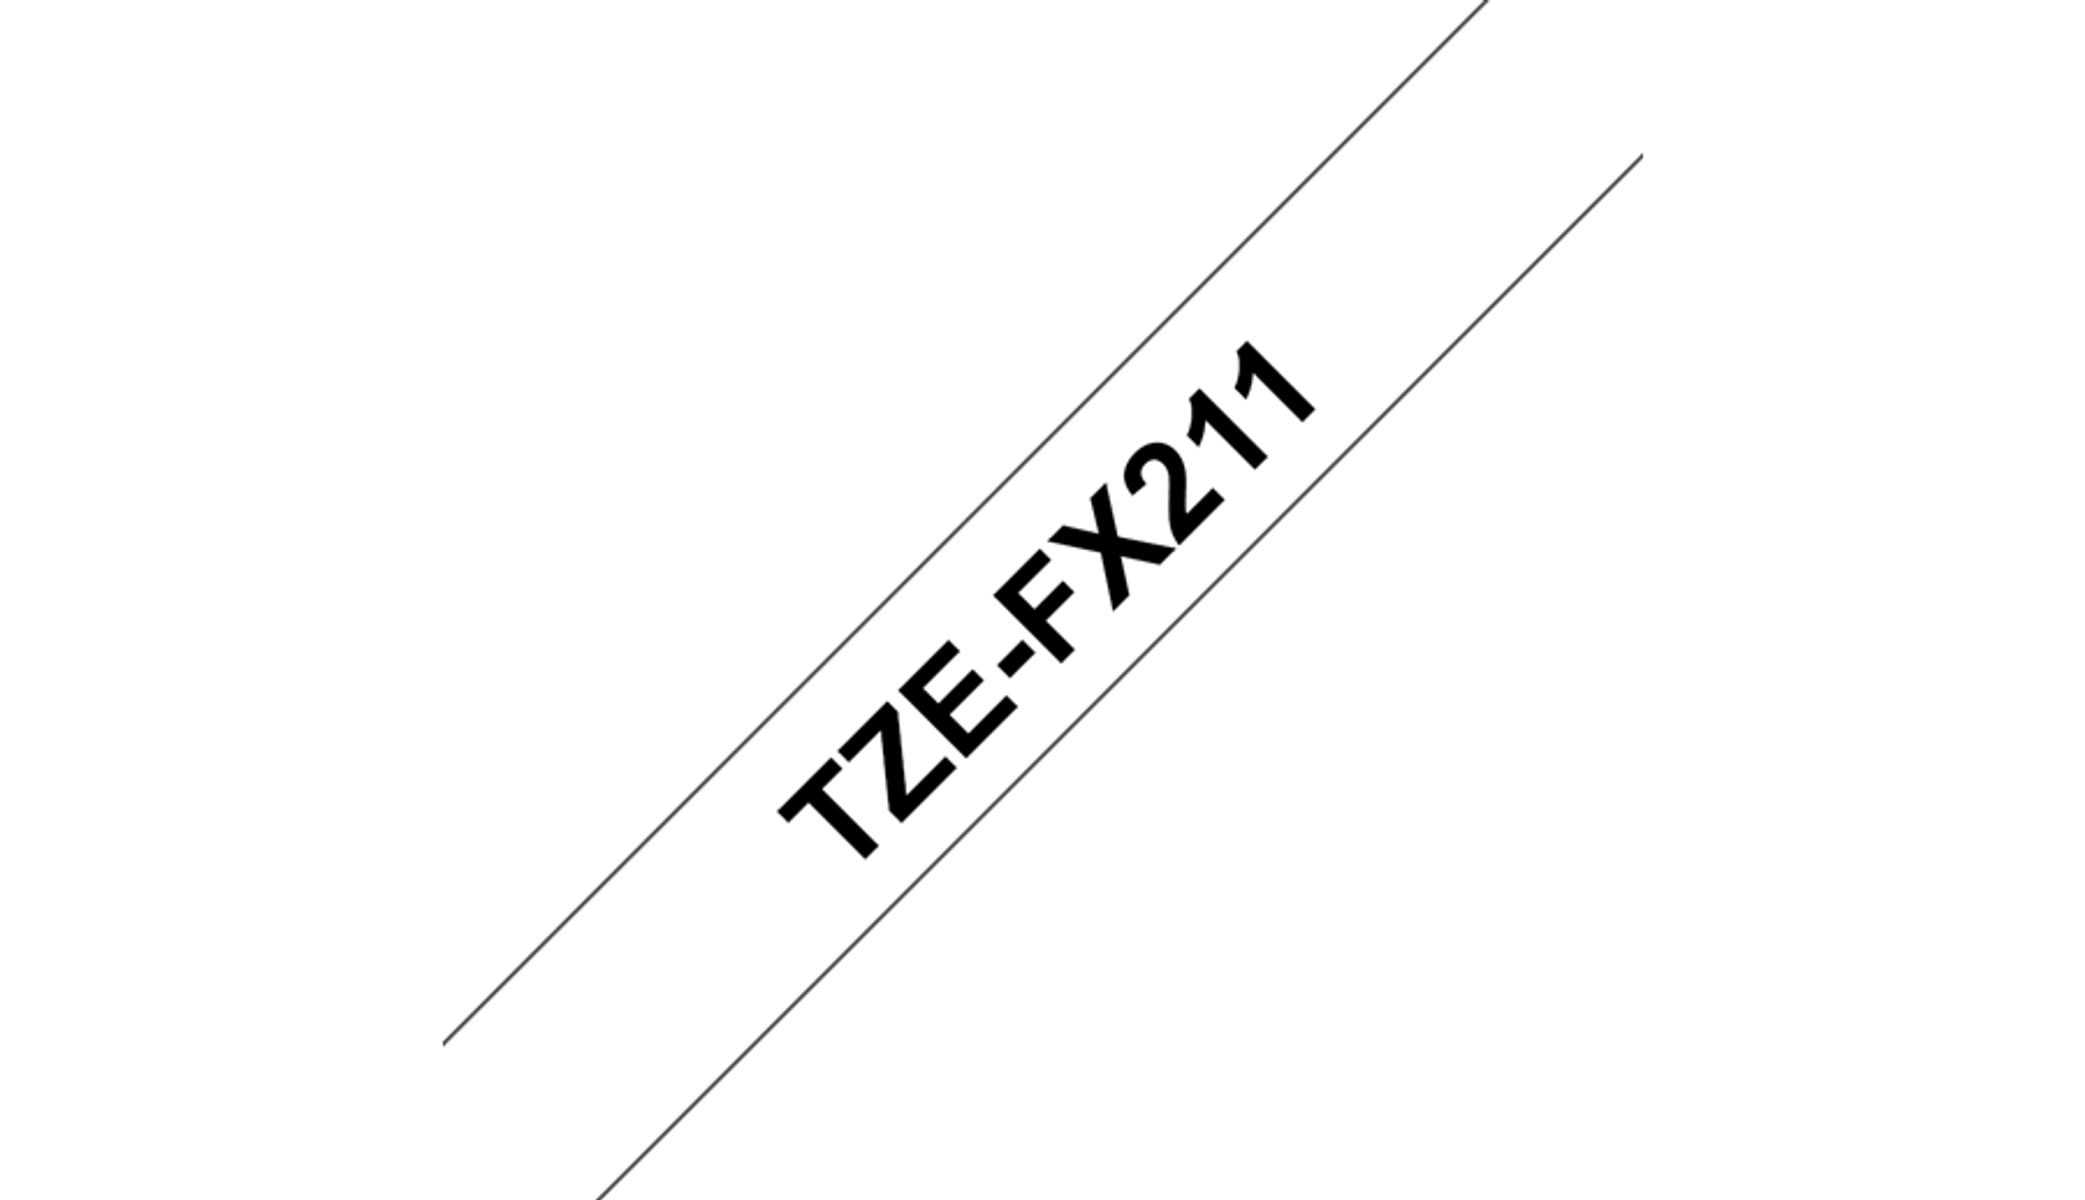 Farbband P-Touch (TZE-FX211) Nicht Brother BROTHER auf weiß Schriftband Original verfügbar schwarz